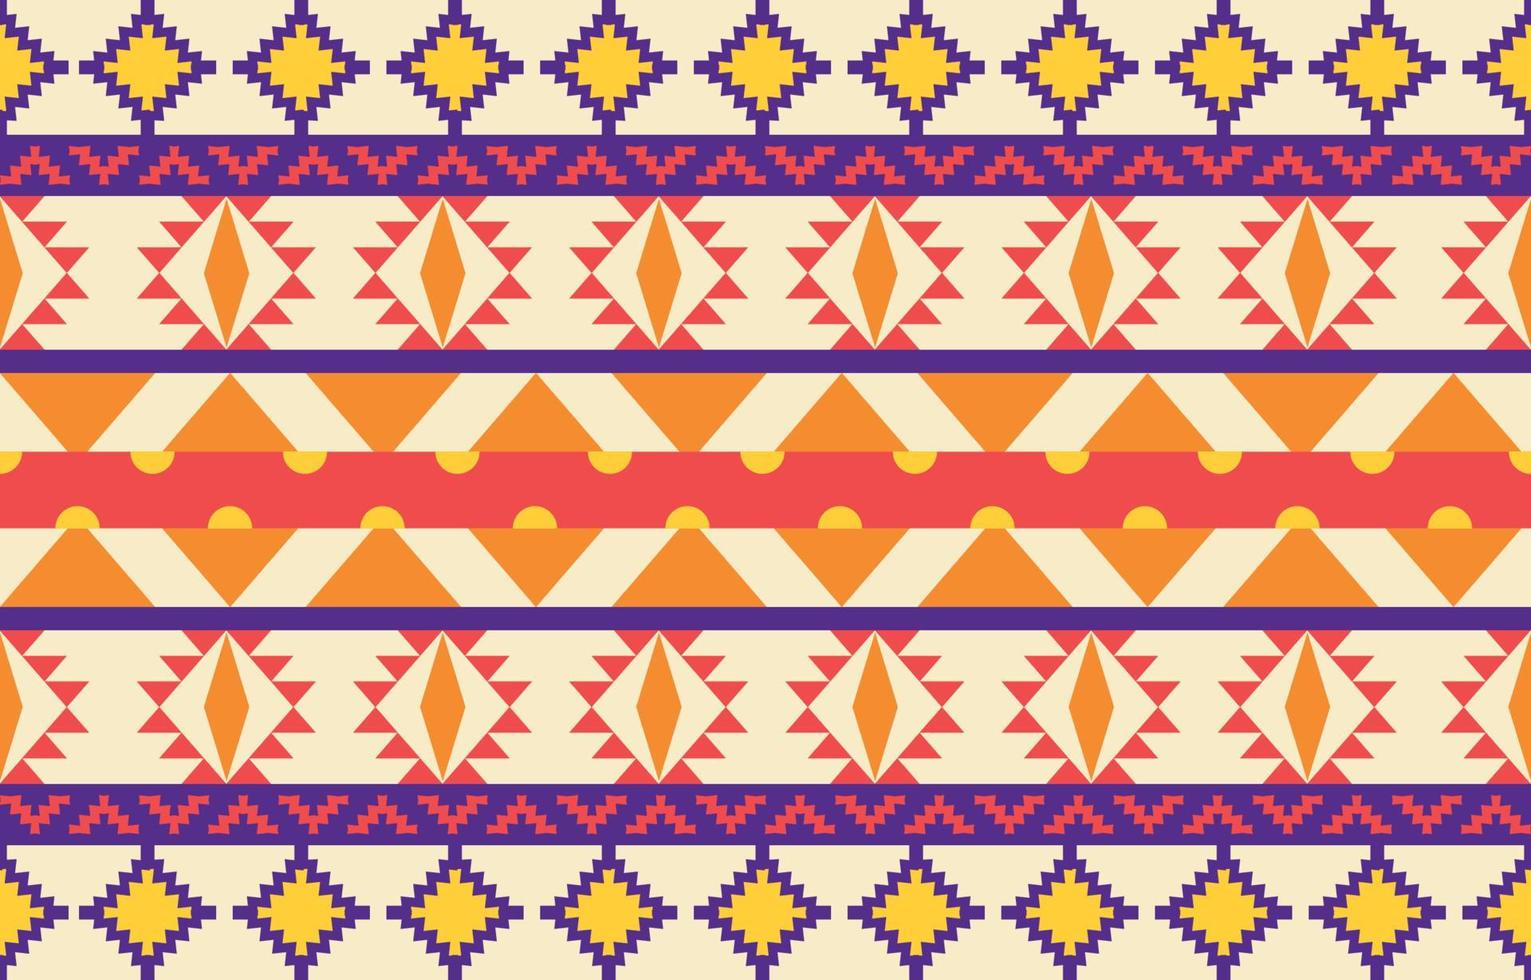 Nếu bạn yêu thích mẫu vải Navajo, hãy đến với mẫu vải Mỹ bản địa Navajo, với họa tiết bất tận hình khối độc đáo và đẹp mắt! Những dòng vải này mang đậm chất Mỹ, tỉ mỉ trong từng đường nét và tôn lên nét đẹp bản sắc của dân tộc Navajo. Hãy cùng trải nghiệm nét đẹp của văn hóa Mỹ bản địa.